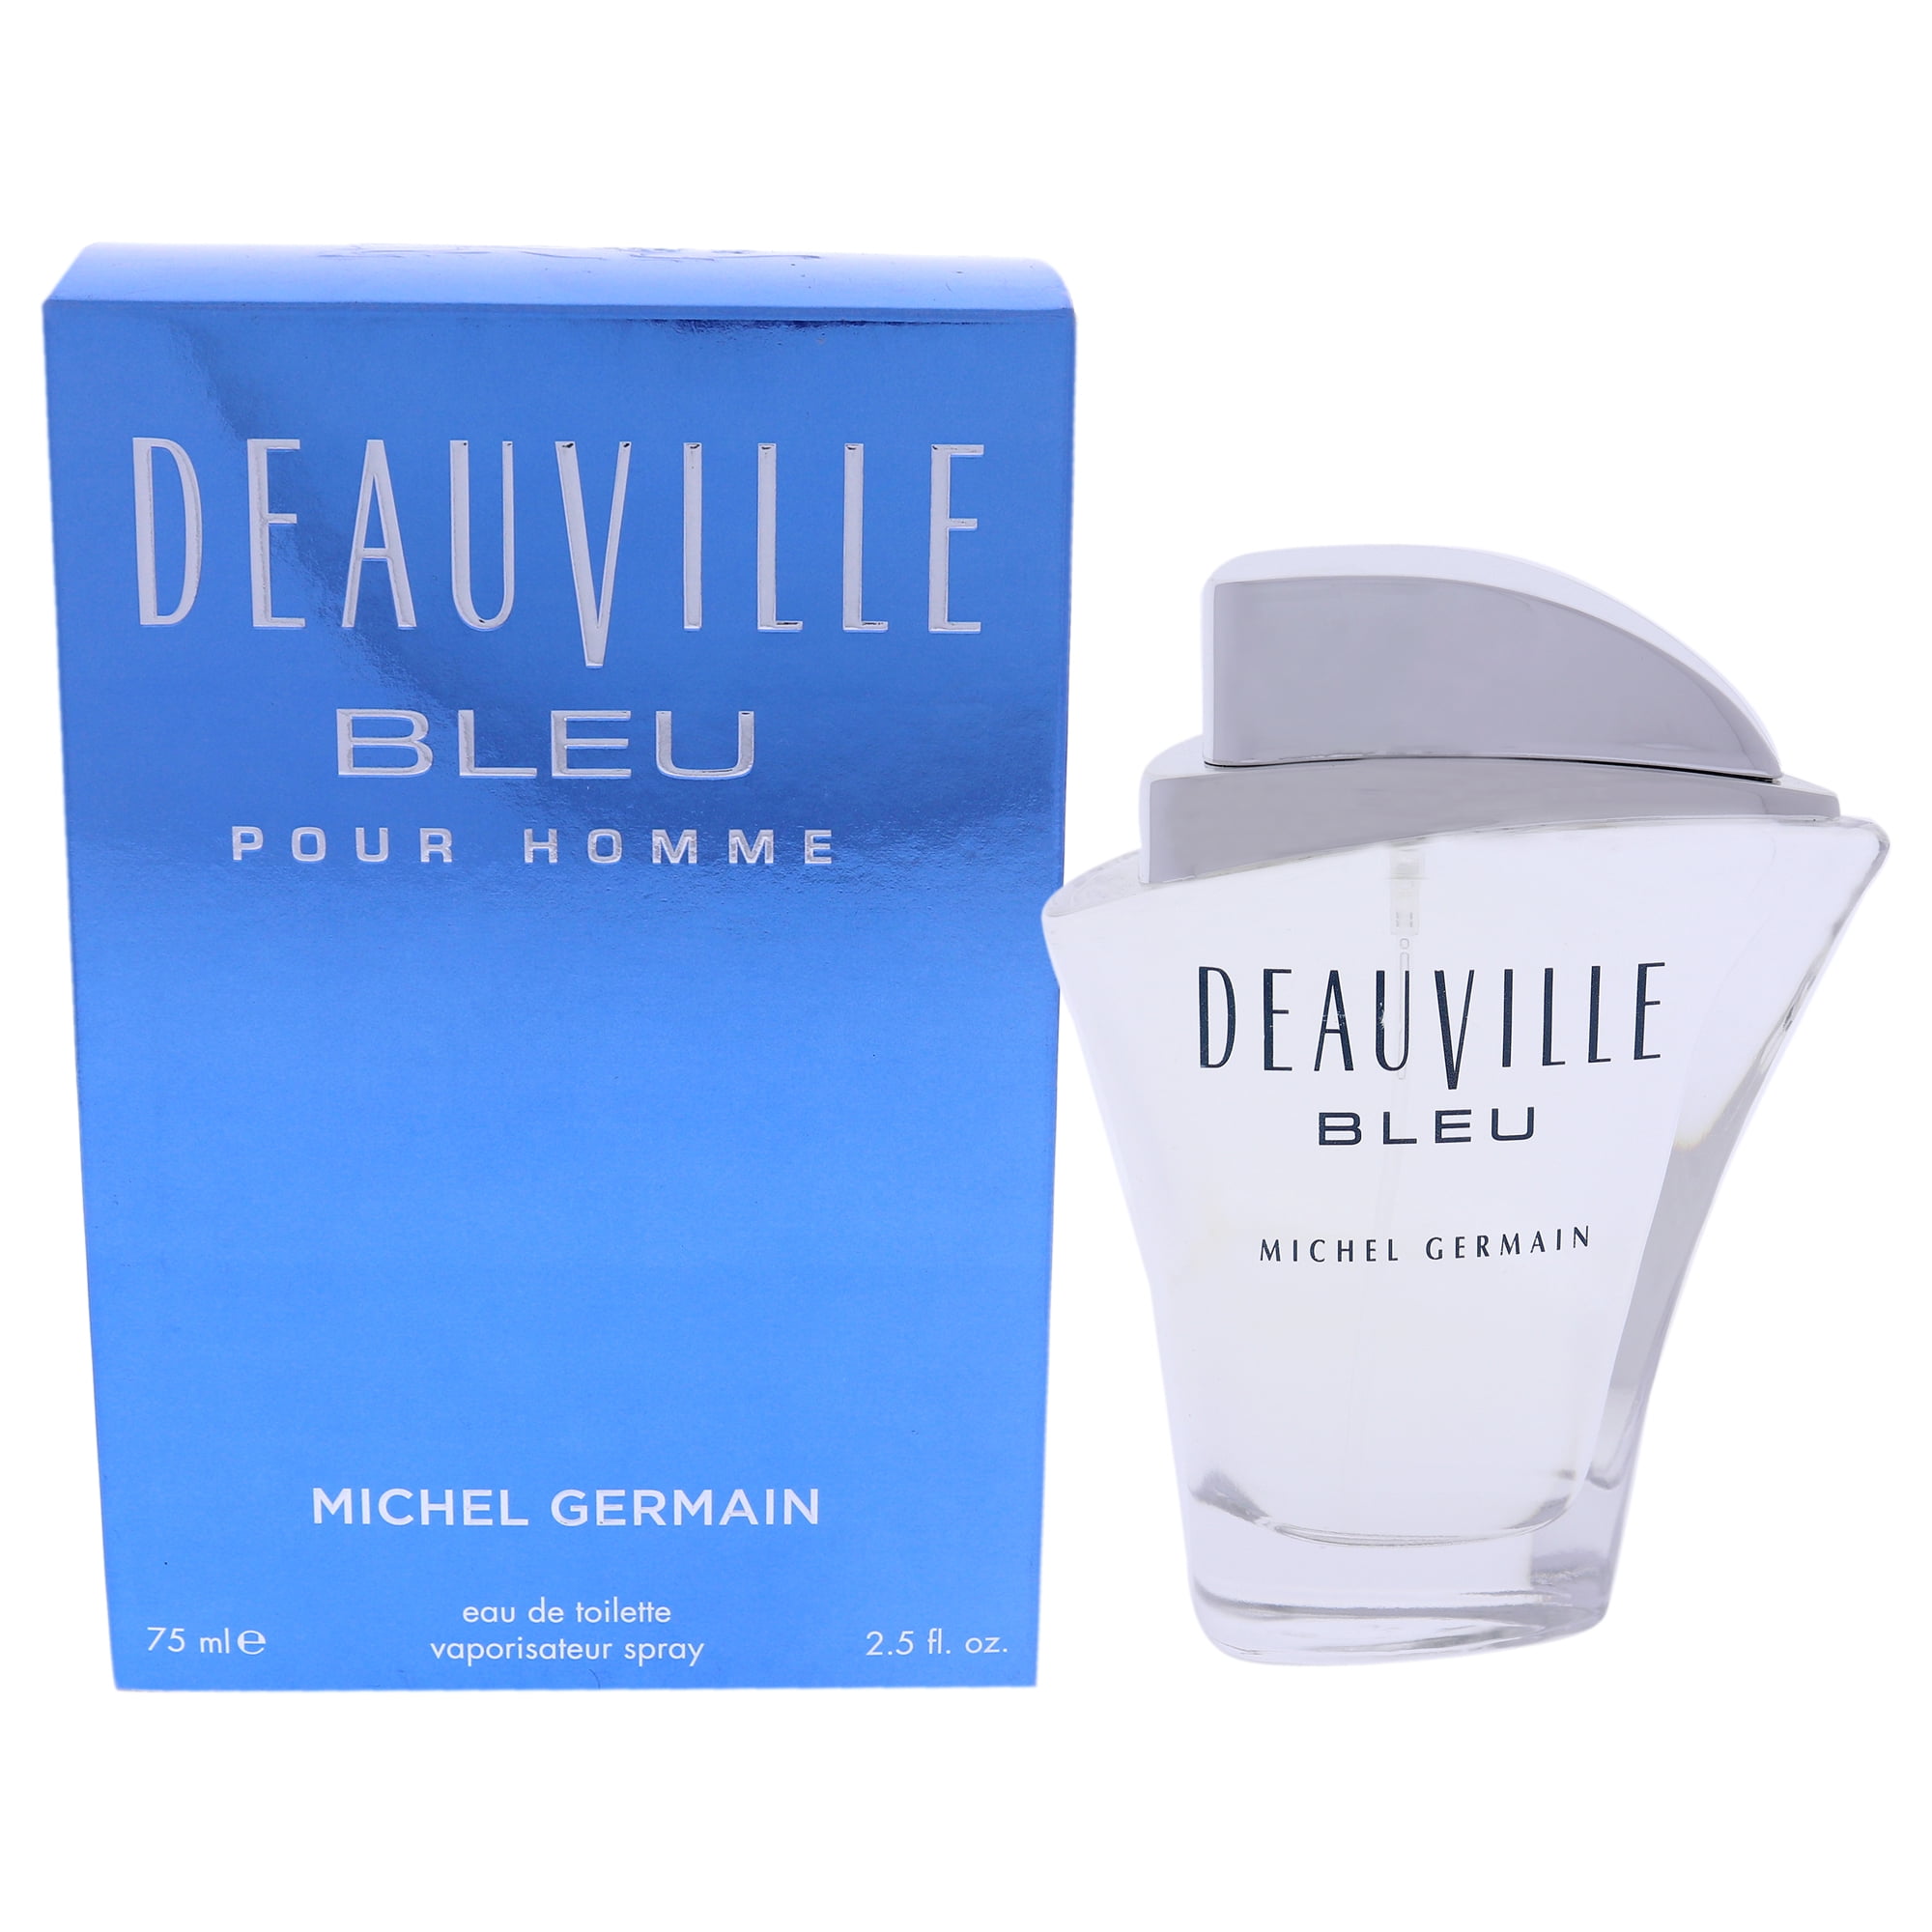 deauville bleu michel germain